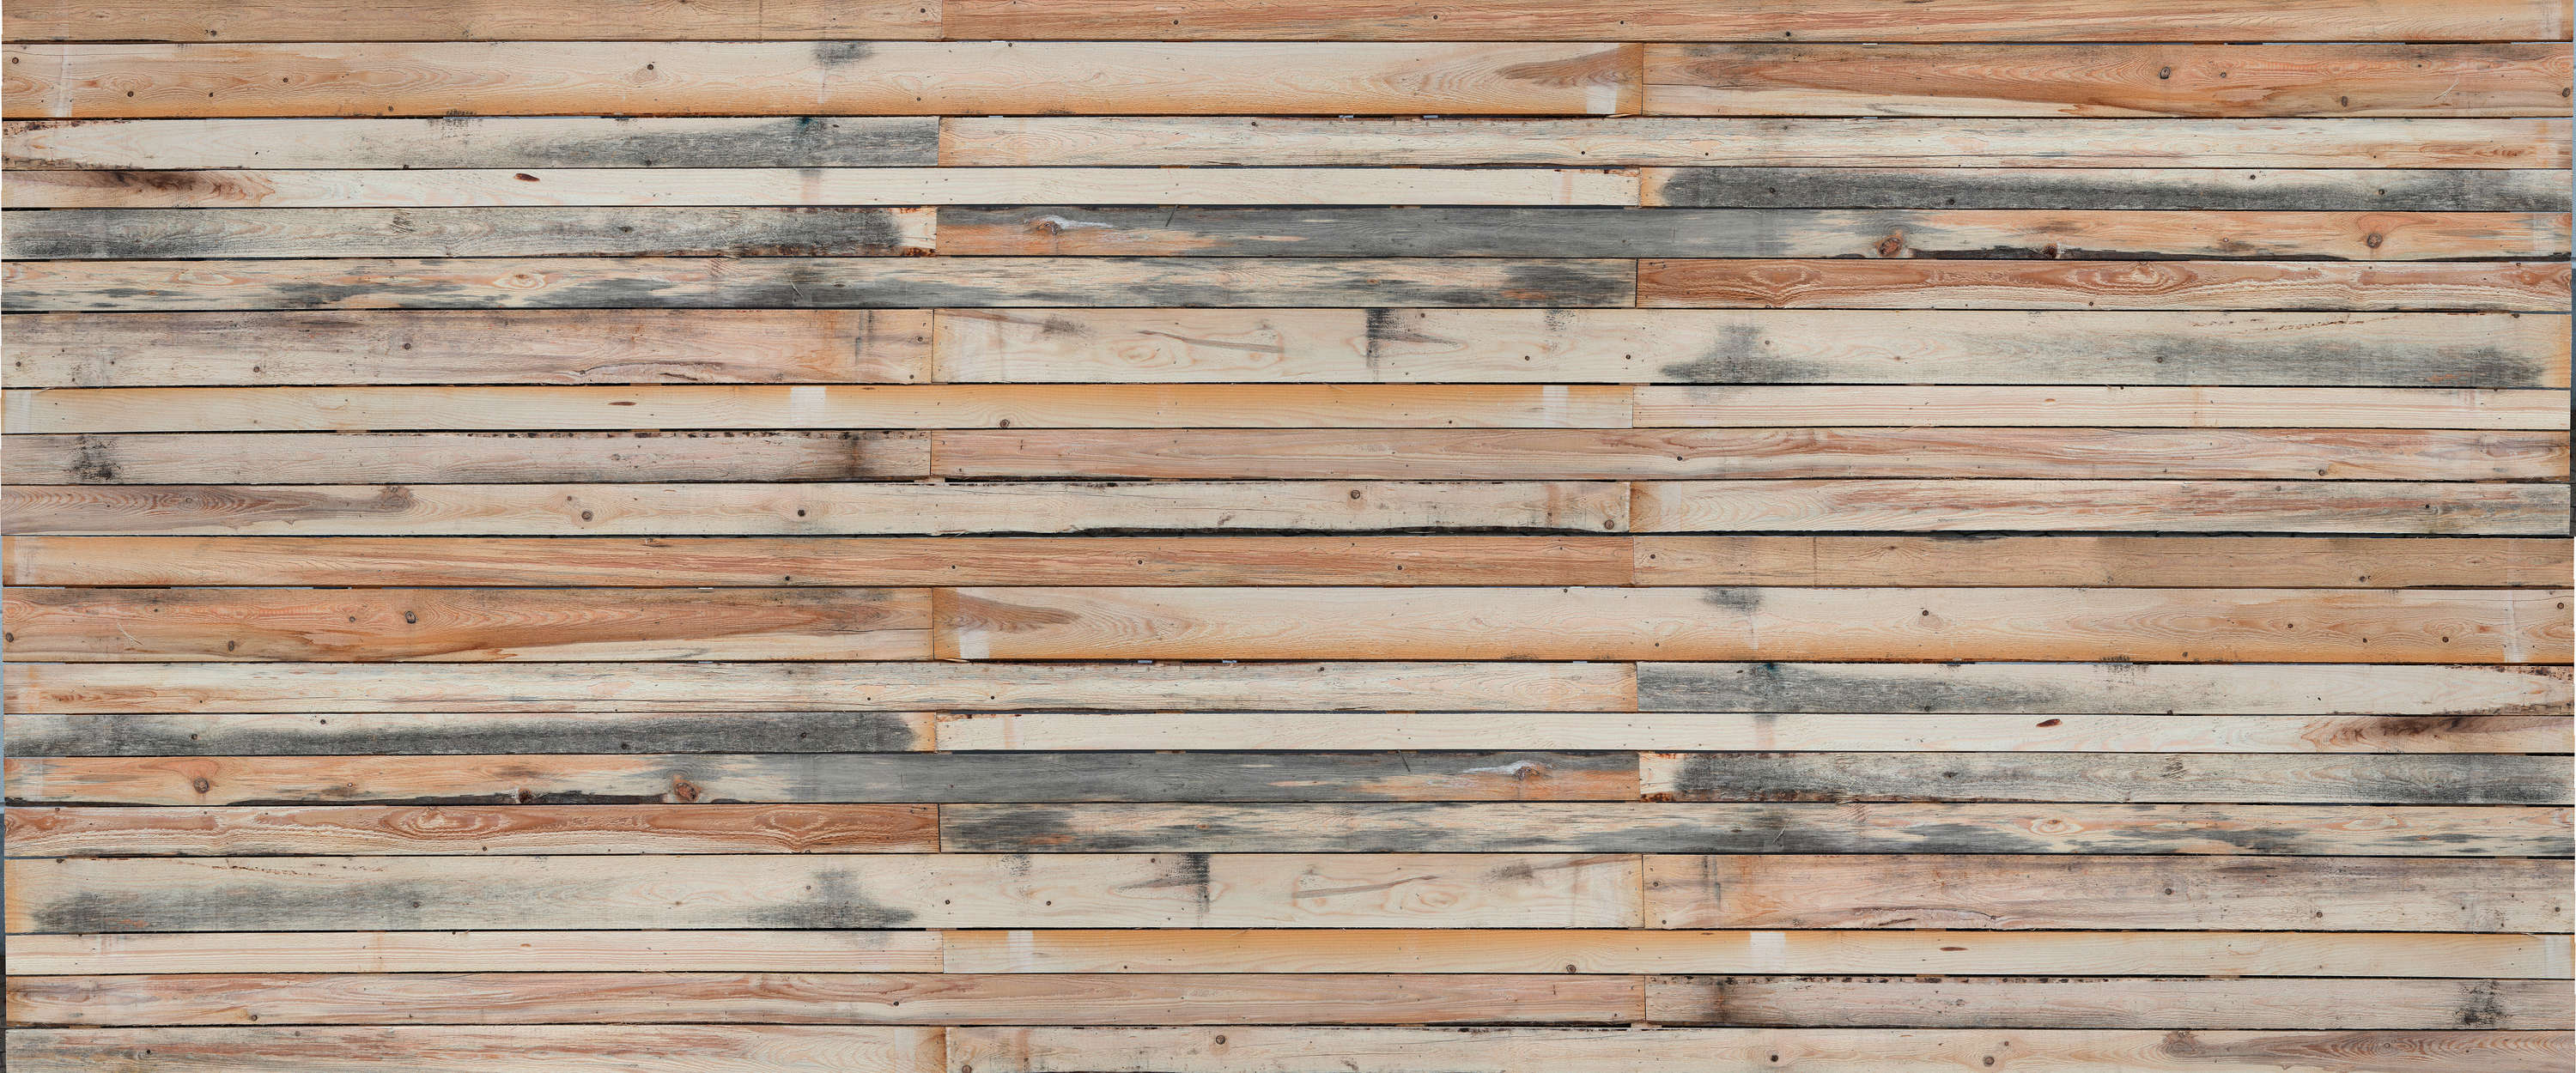             Planches de bois usées par les intempéries - Papier peint panoramique au look usé pour mettre en valeur votre mur
        